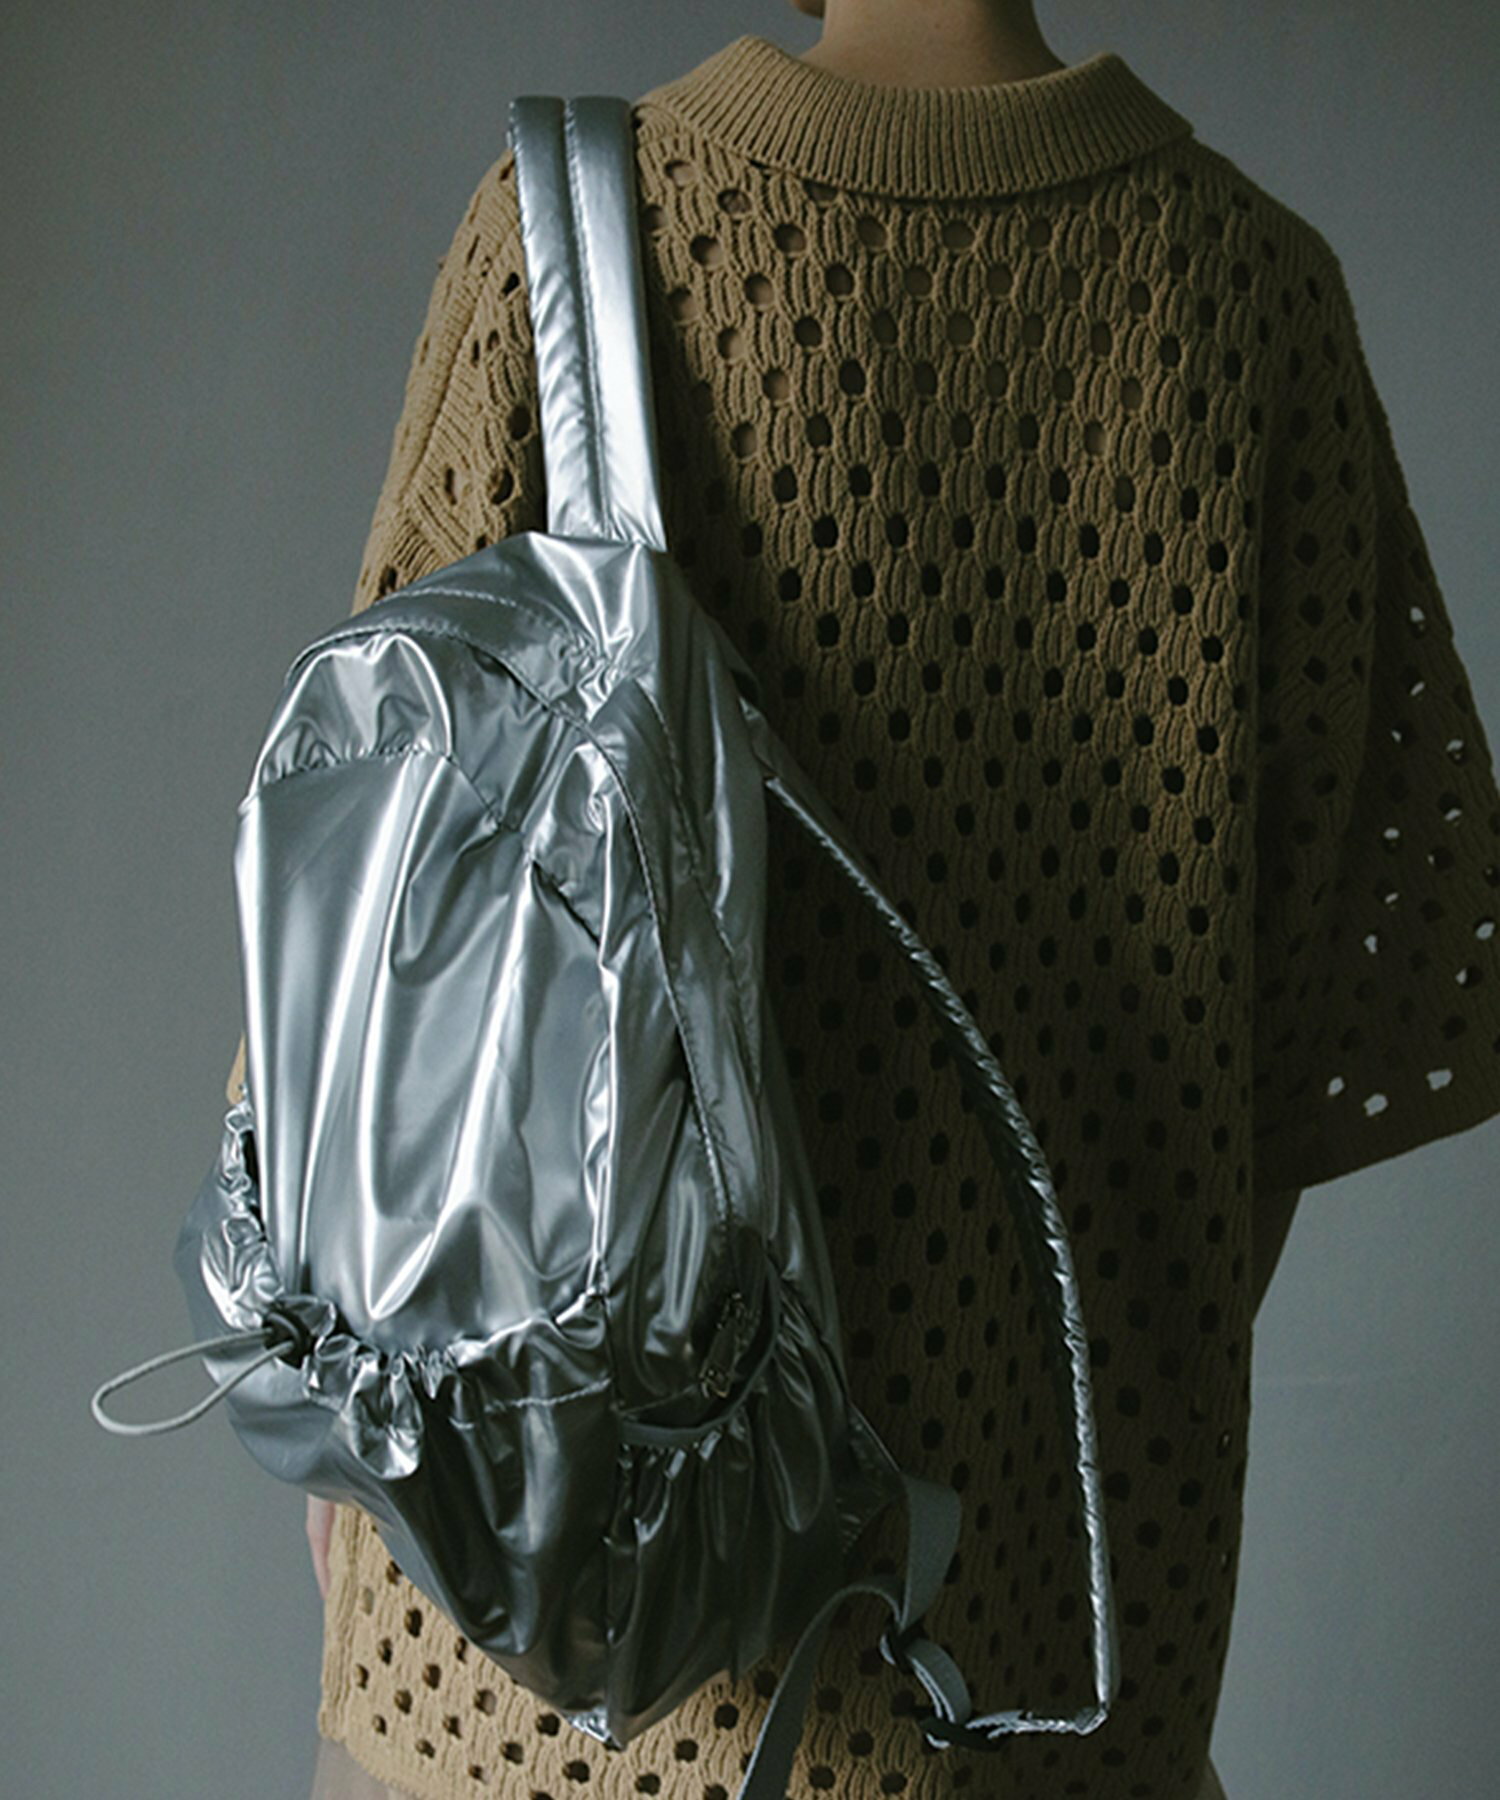 Nylon metal backpack / トレンド カラー シルバー ブラック バックパック